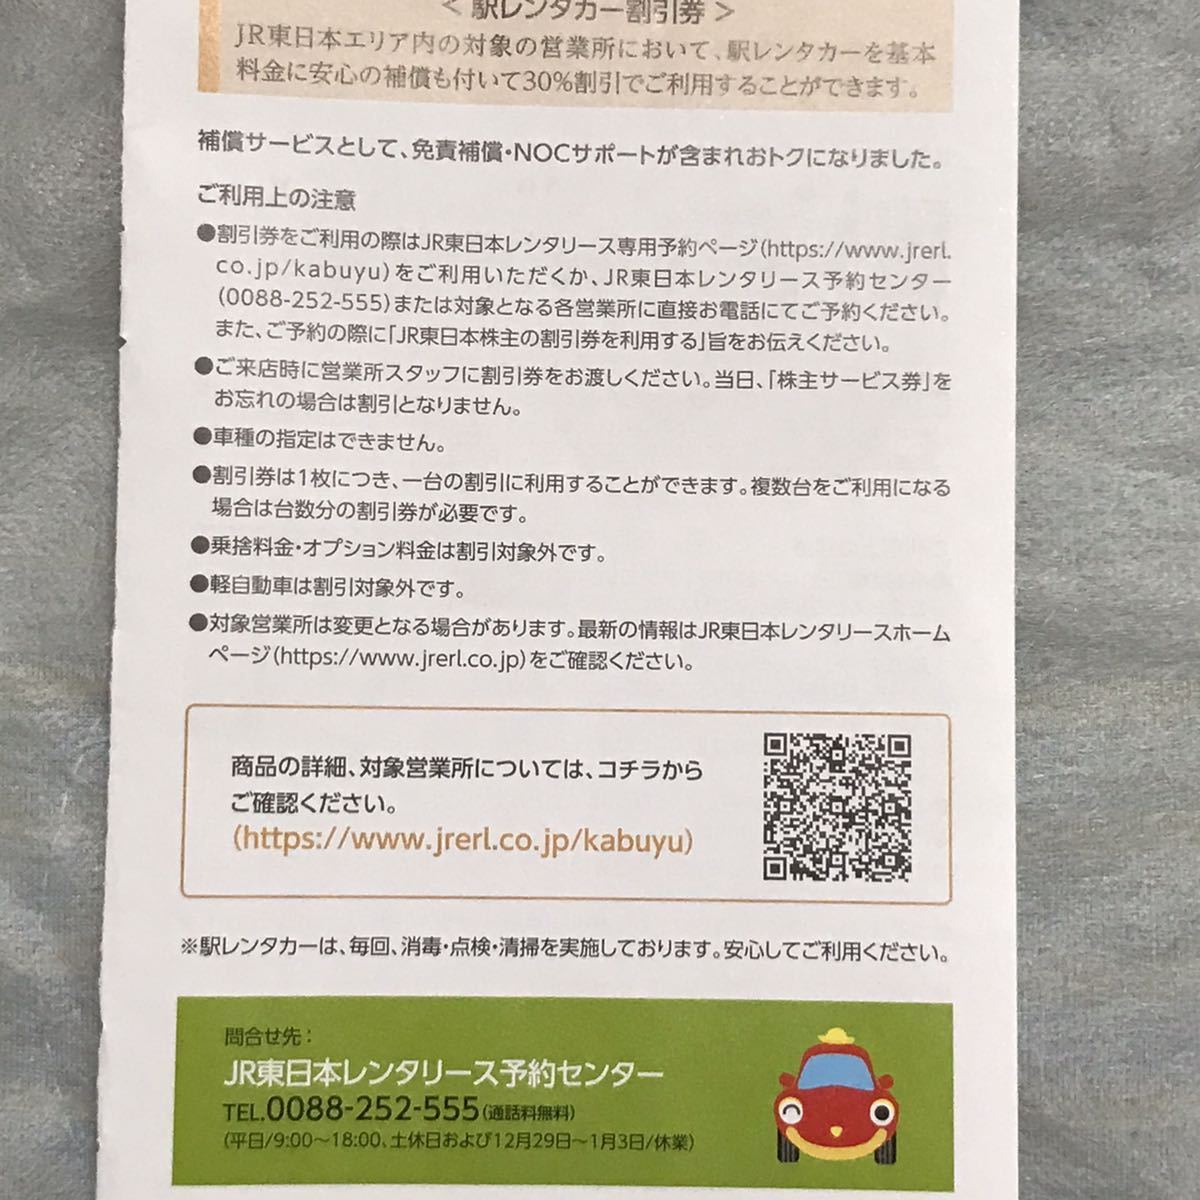 3枚 駅レンタカー 割引券 JR東日本 株主優待 レンタカー クーポン_画像2